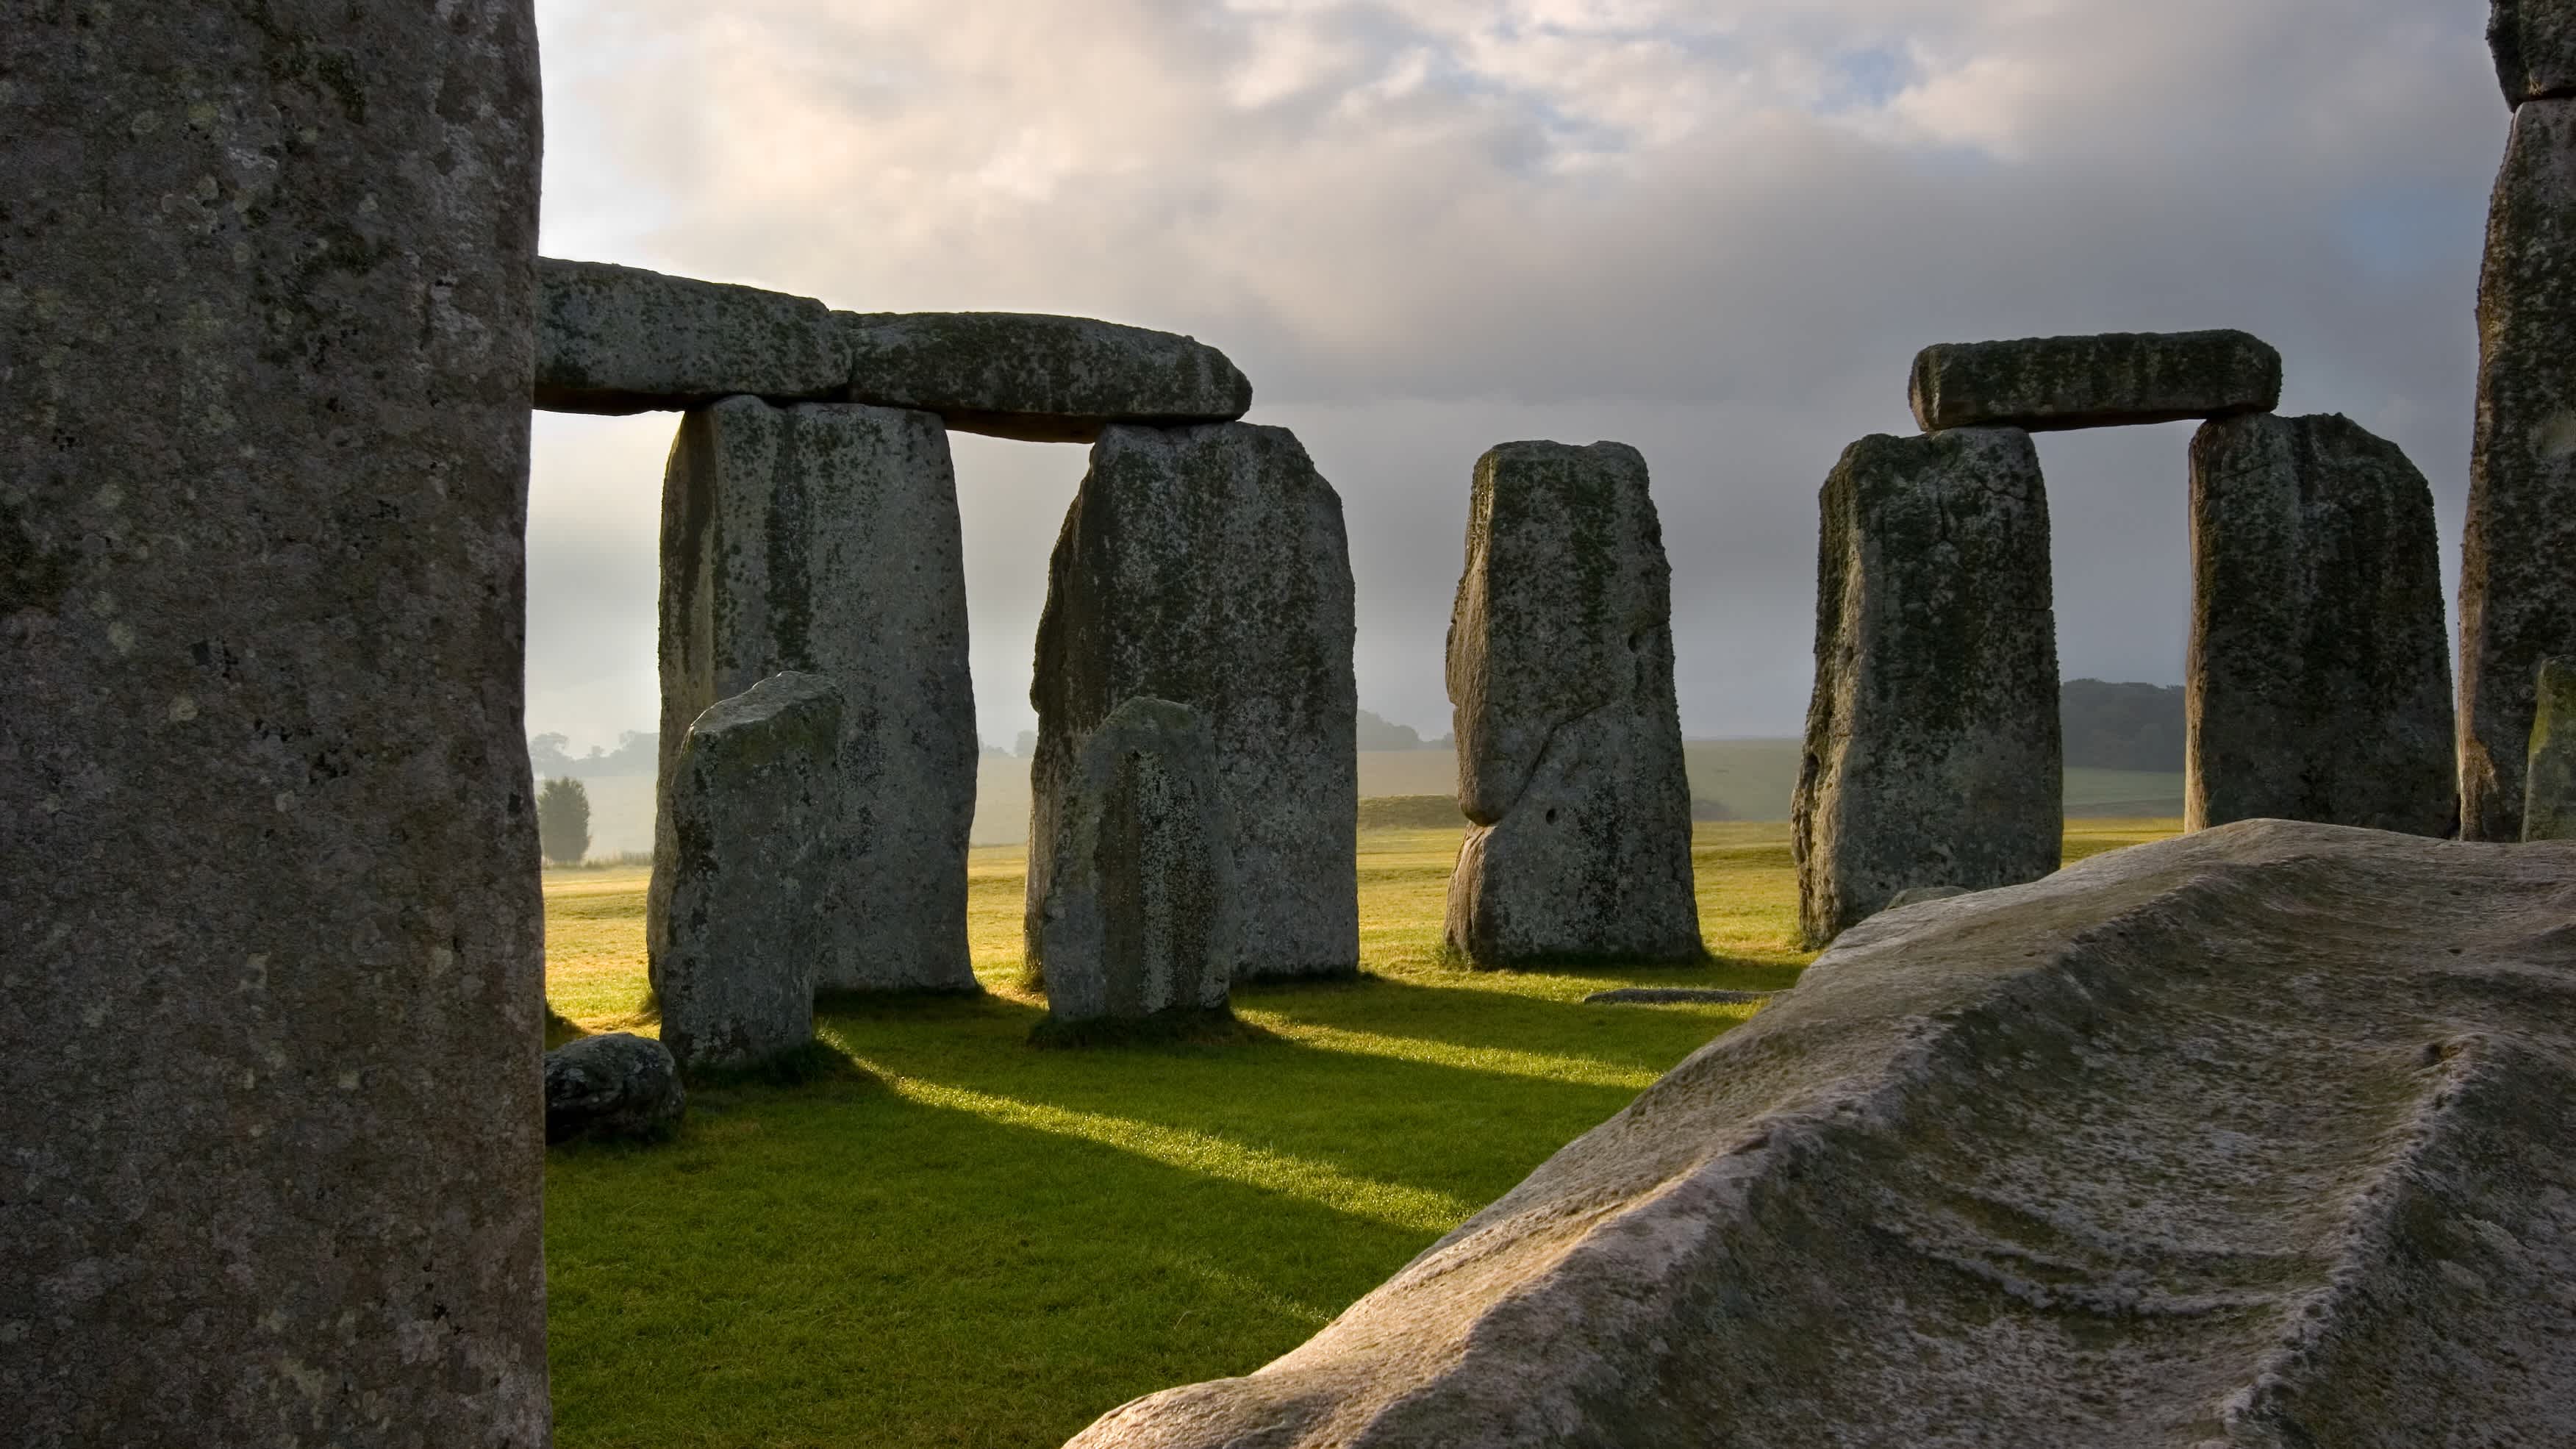 Die Sonne geht auf und wirft ihre Strahlen durch die massiven, handgeschnitzten Steine von Stonehenge, das vor Tausenden von Jahren in der Salisbury-Ebene errichtet wurde. England, Großbritannien.